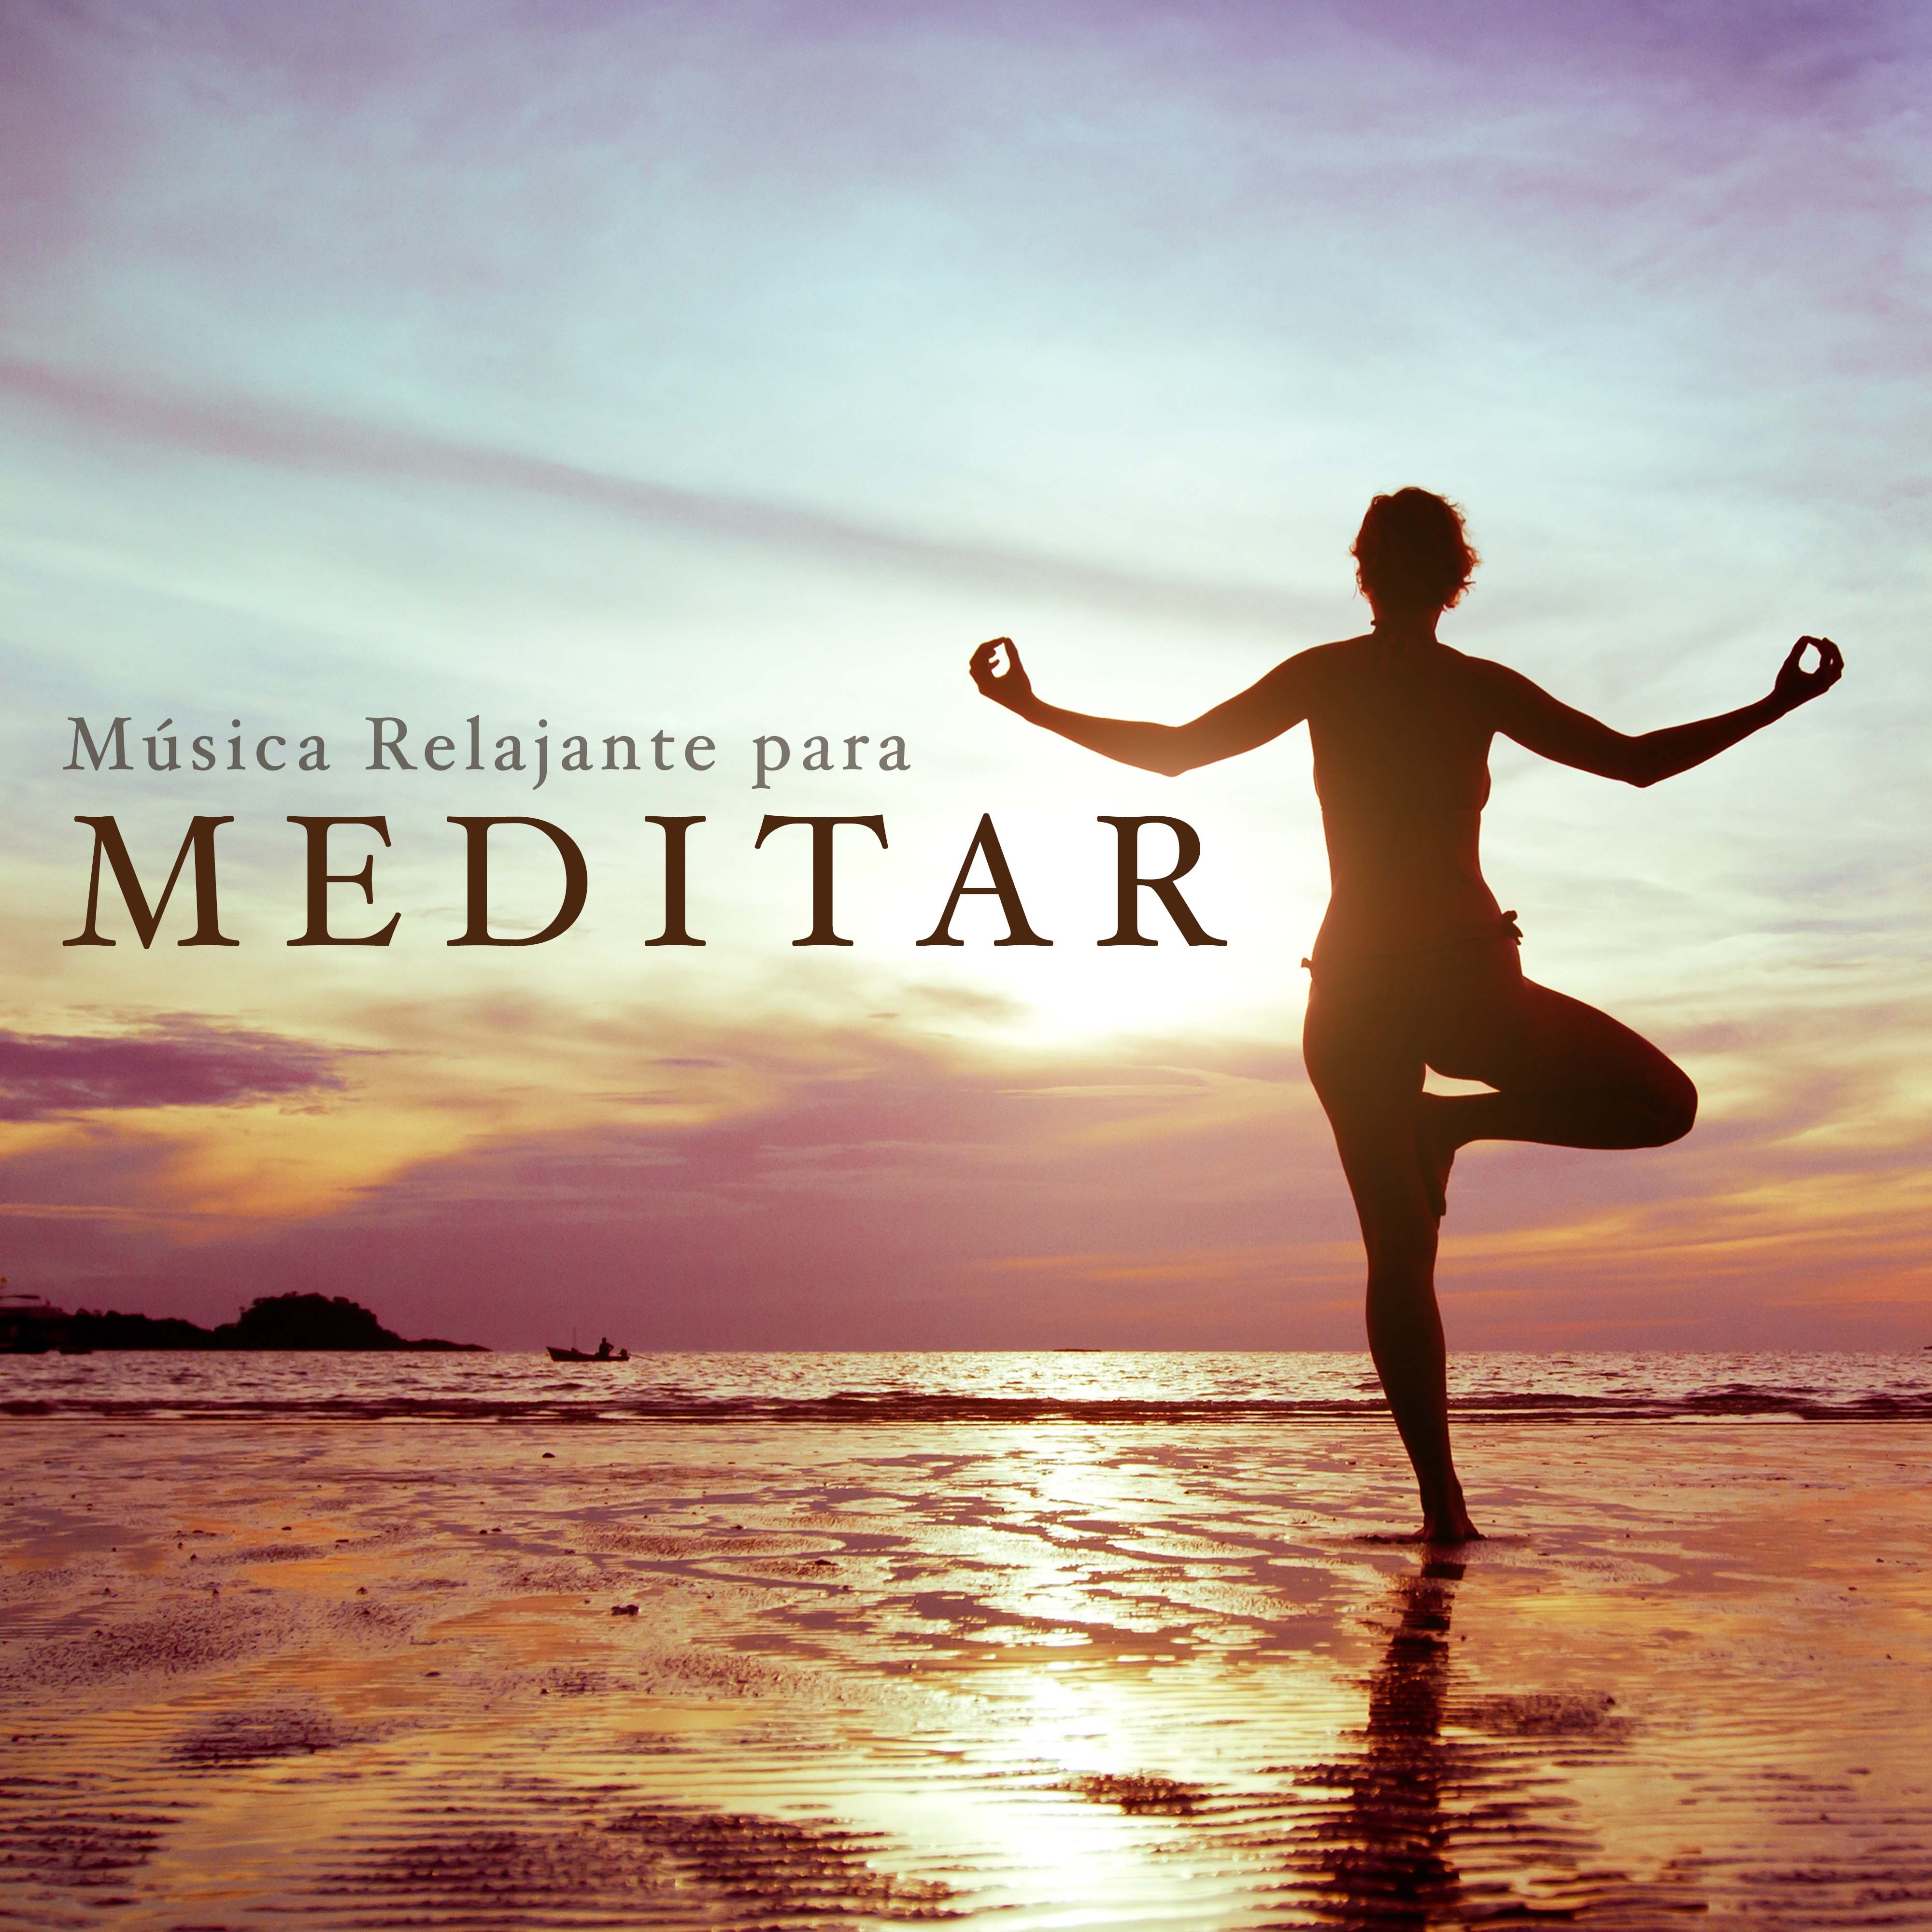 Musica Relajante para Meditar